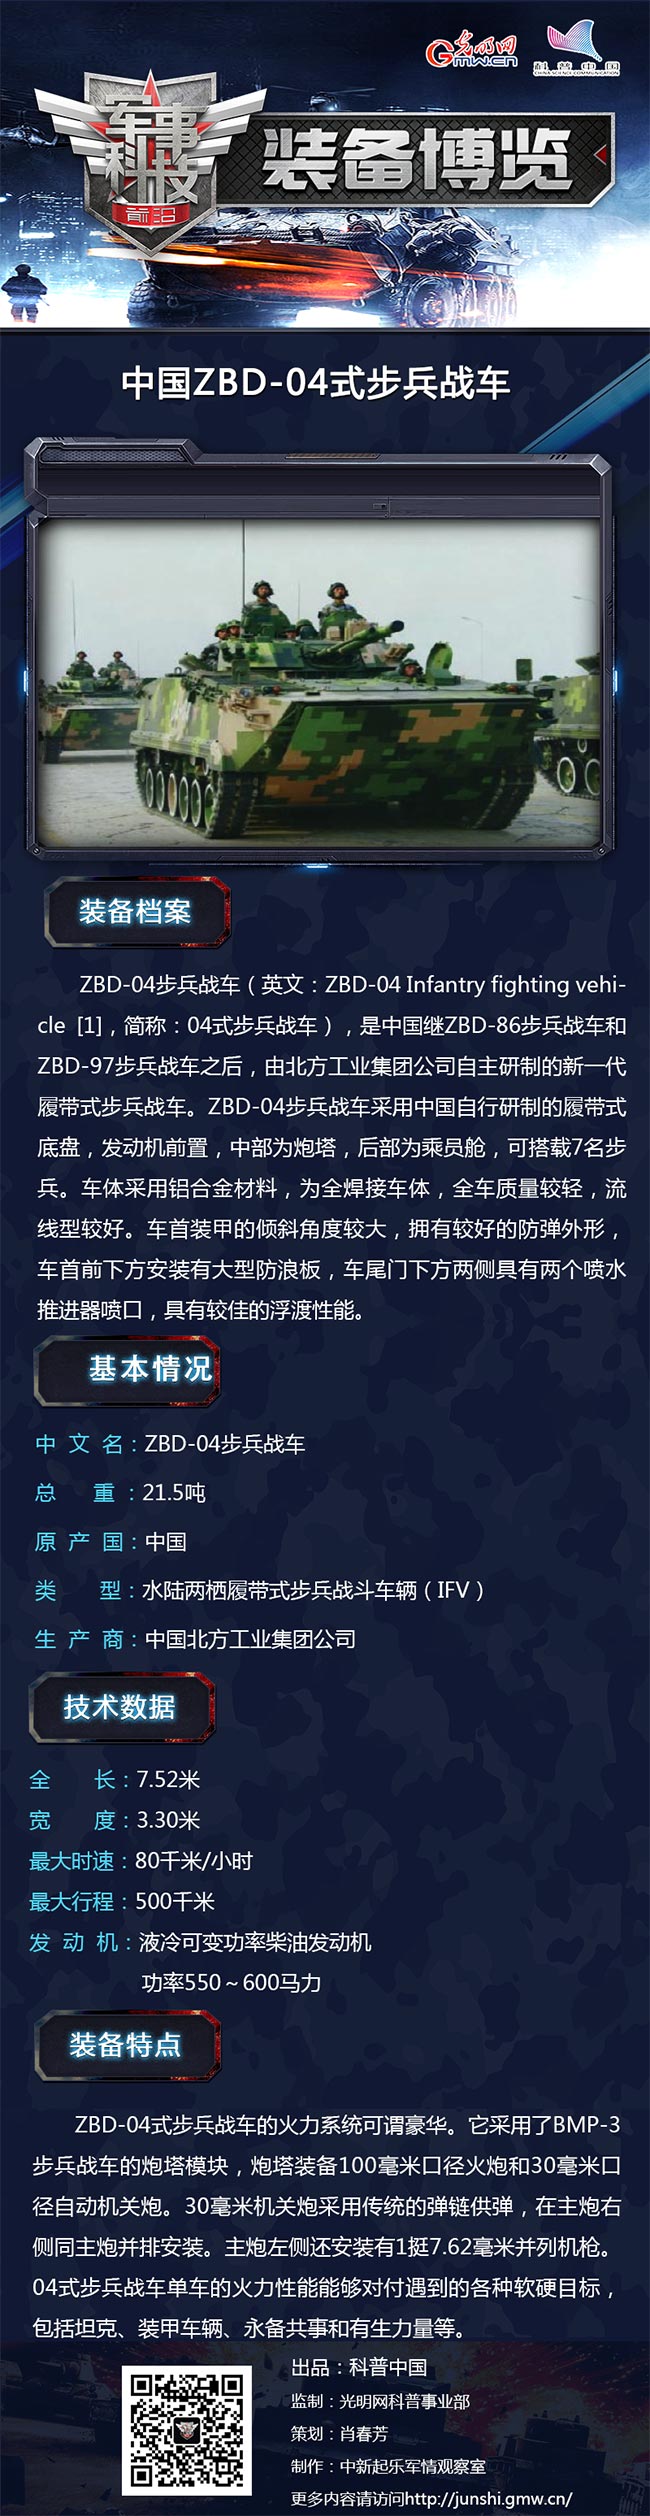 中国坦克新“伴侣”——ZBD-04式步兵战车